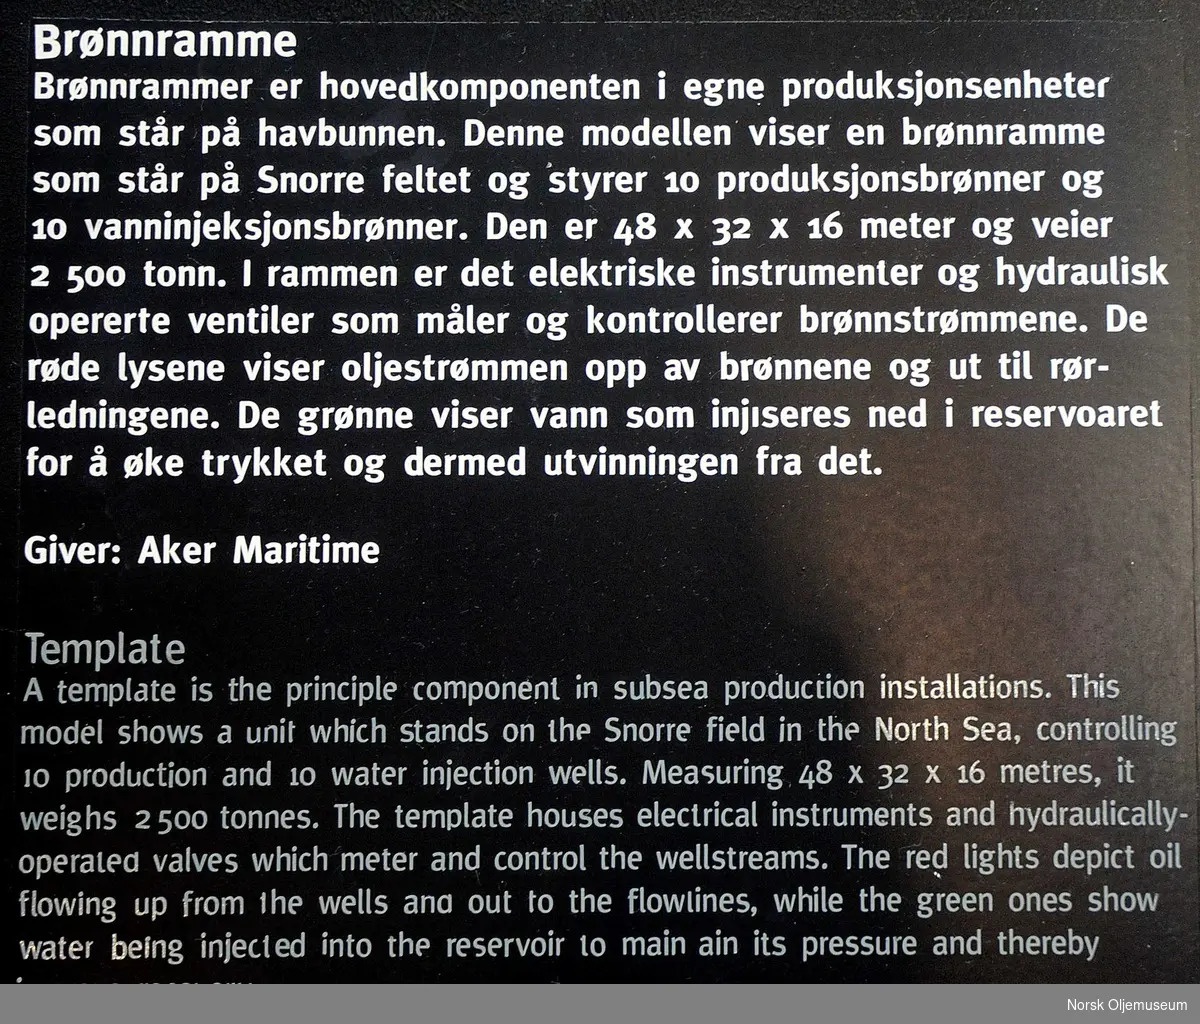 Modell av brønnramme på Snorrefeltet. Modellen er bygget i målestokk 1:50.